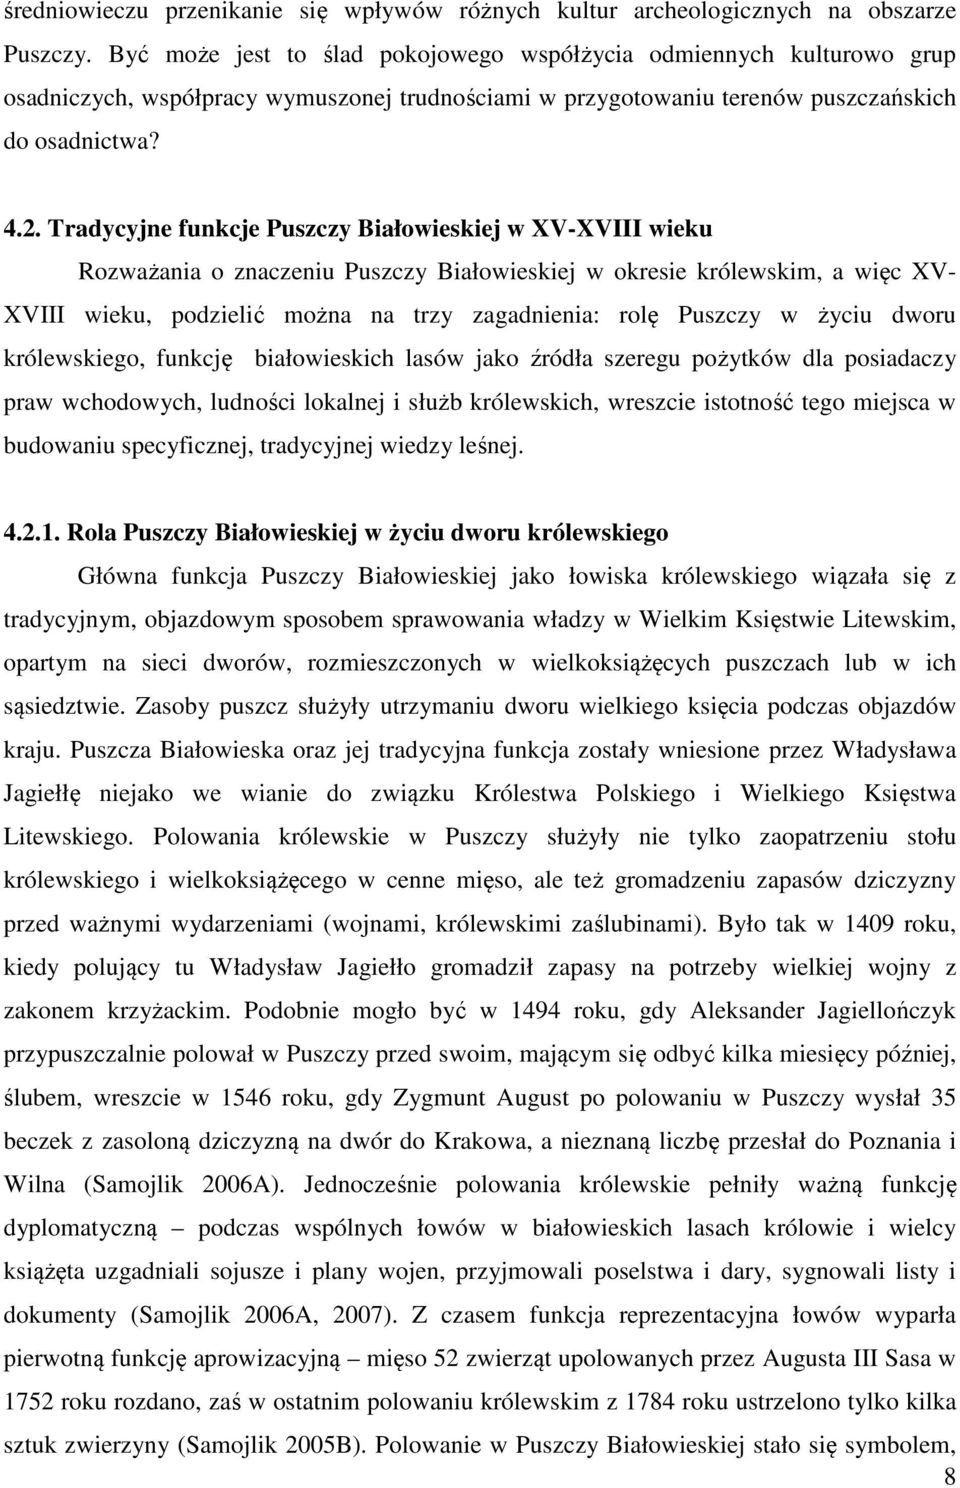 Tradycyjne funkcje Puszczy Białowieskiej w XV-XVIII wieku Rozważania o znaczeniu Puszczy Białowieskiej w okresie królewskim, a więc XV- XVIII wieku, podzielić można na trzy zagadnienia: rolę Puszczy